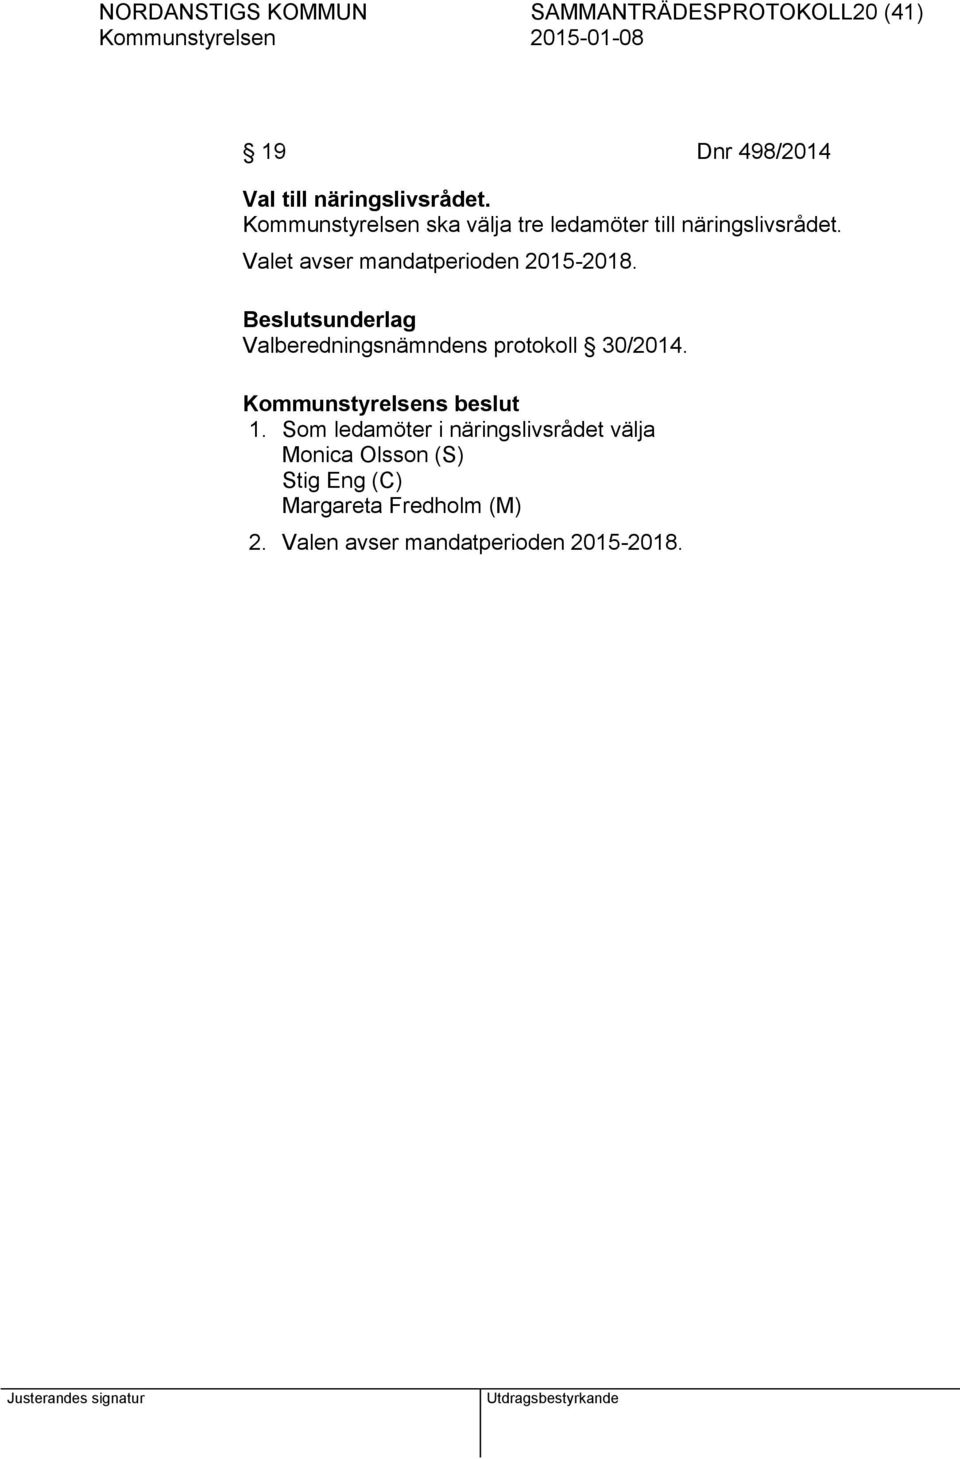 Valet avser mandatperioden 2015-2018. Valberedningsnämndens protokoll 30/2014. 1.